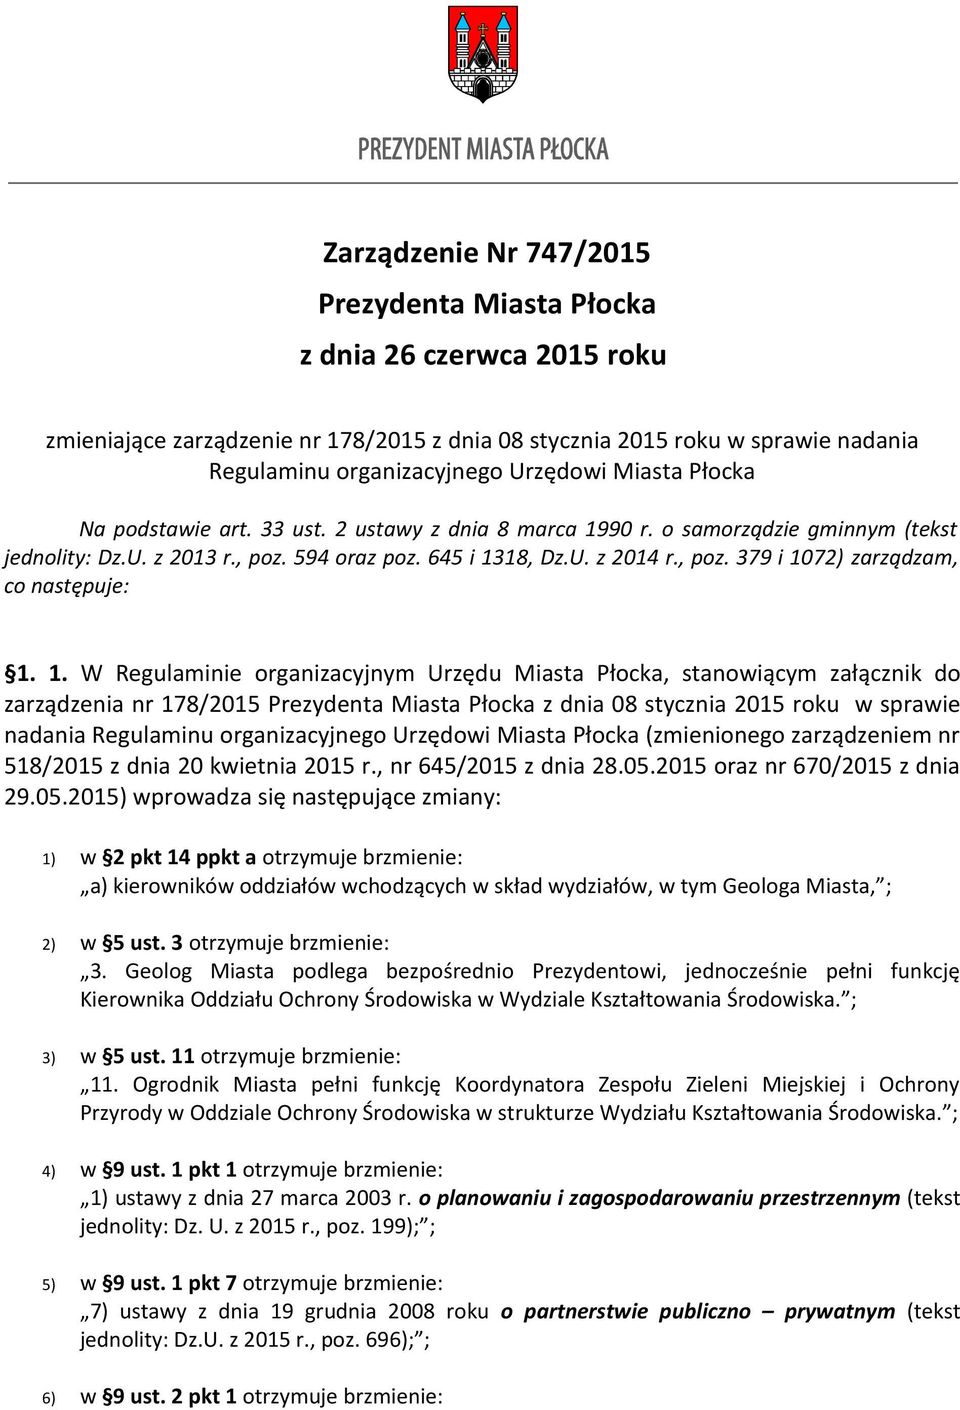 1. W Regulaminie organizacyjnym Urzędu Miasta Płocka, stanowiącym załącznik do zarządzenia nr 178/2015 Prezydenta Miasta Płocka z dnia 08 stycznia 2015 roku w sprawie nadania Regulaminu